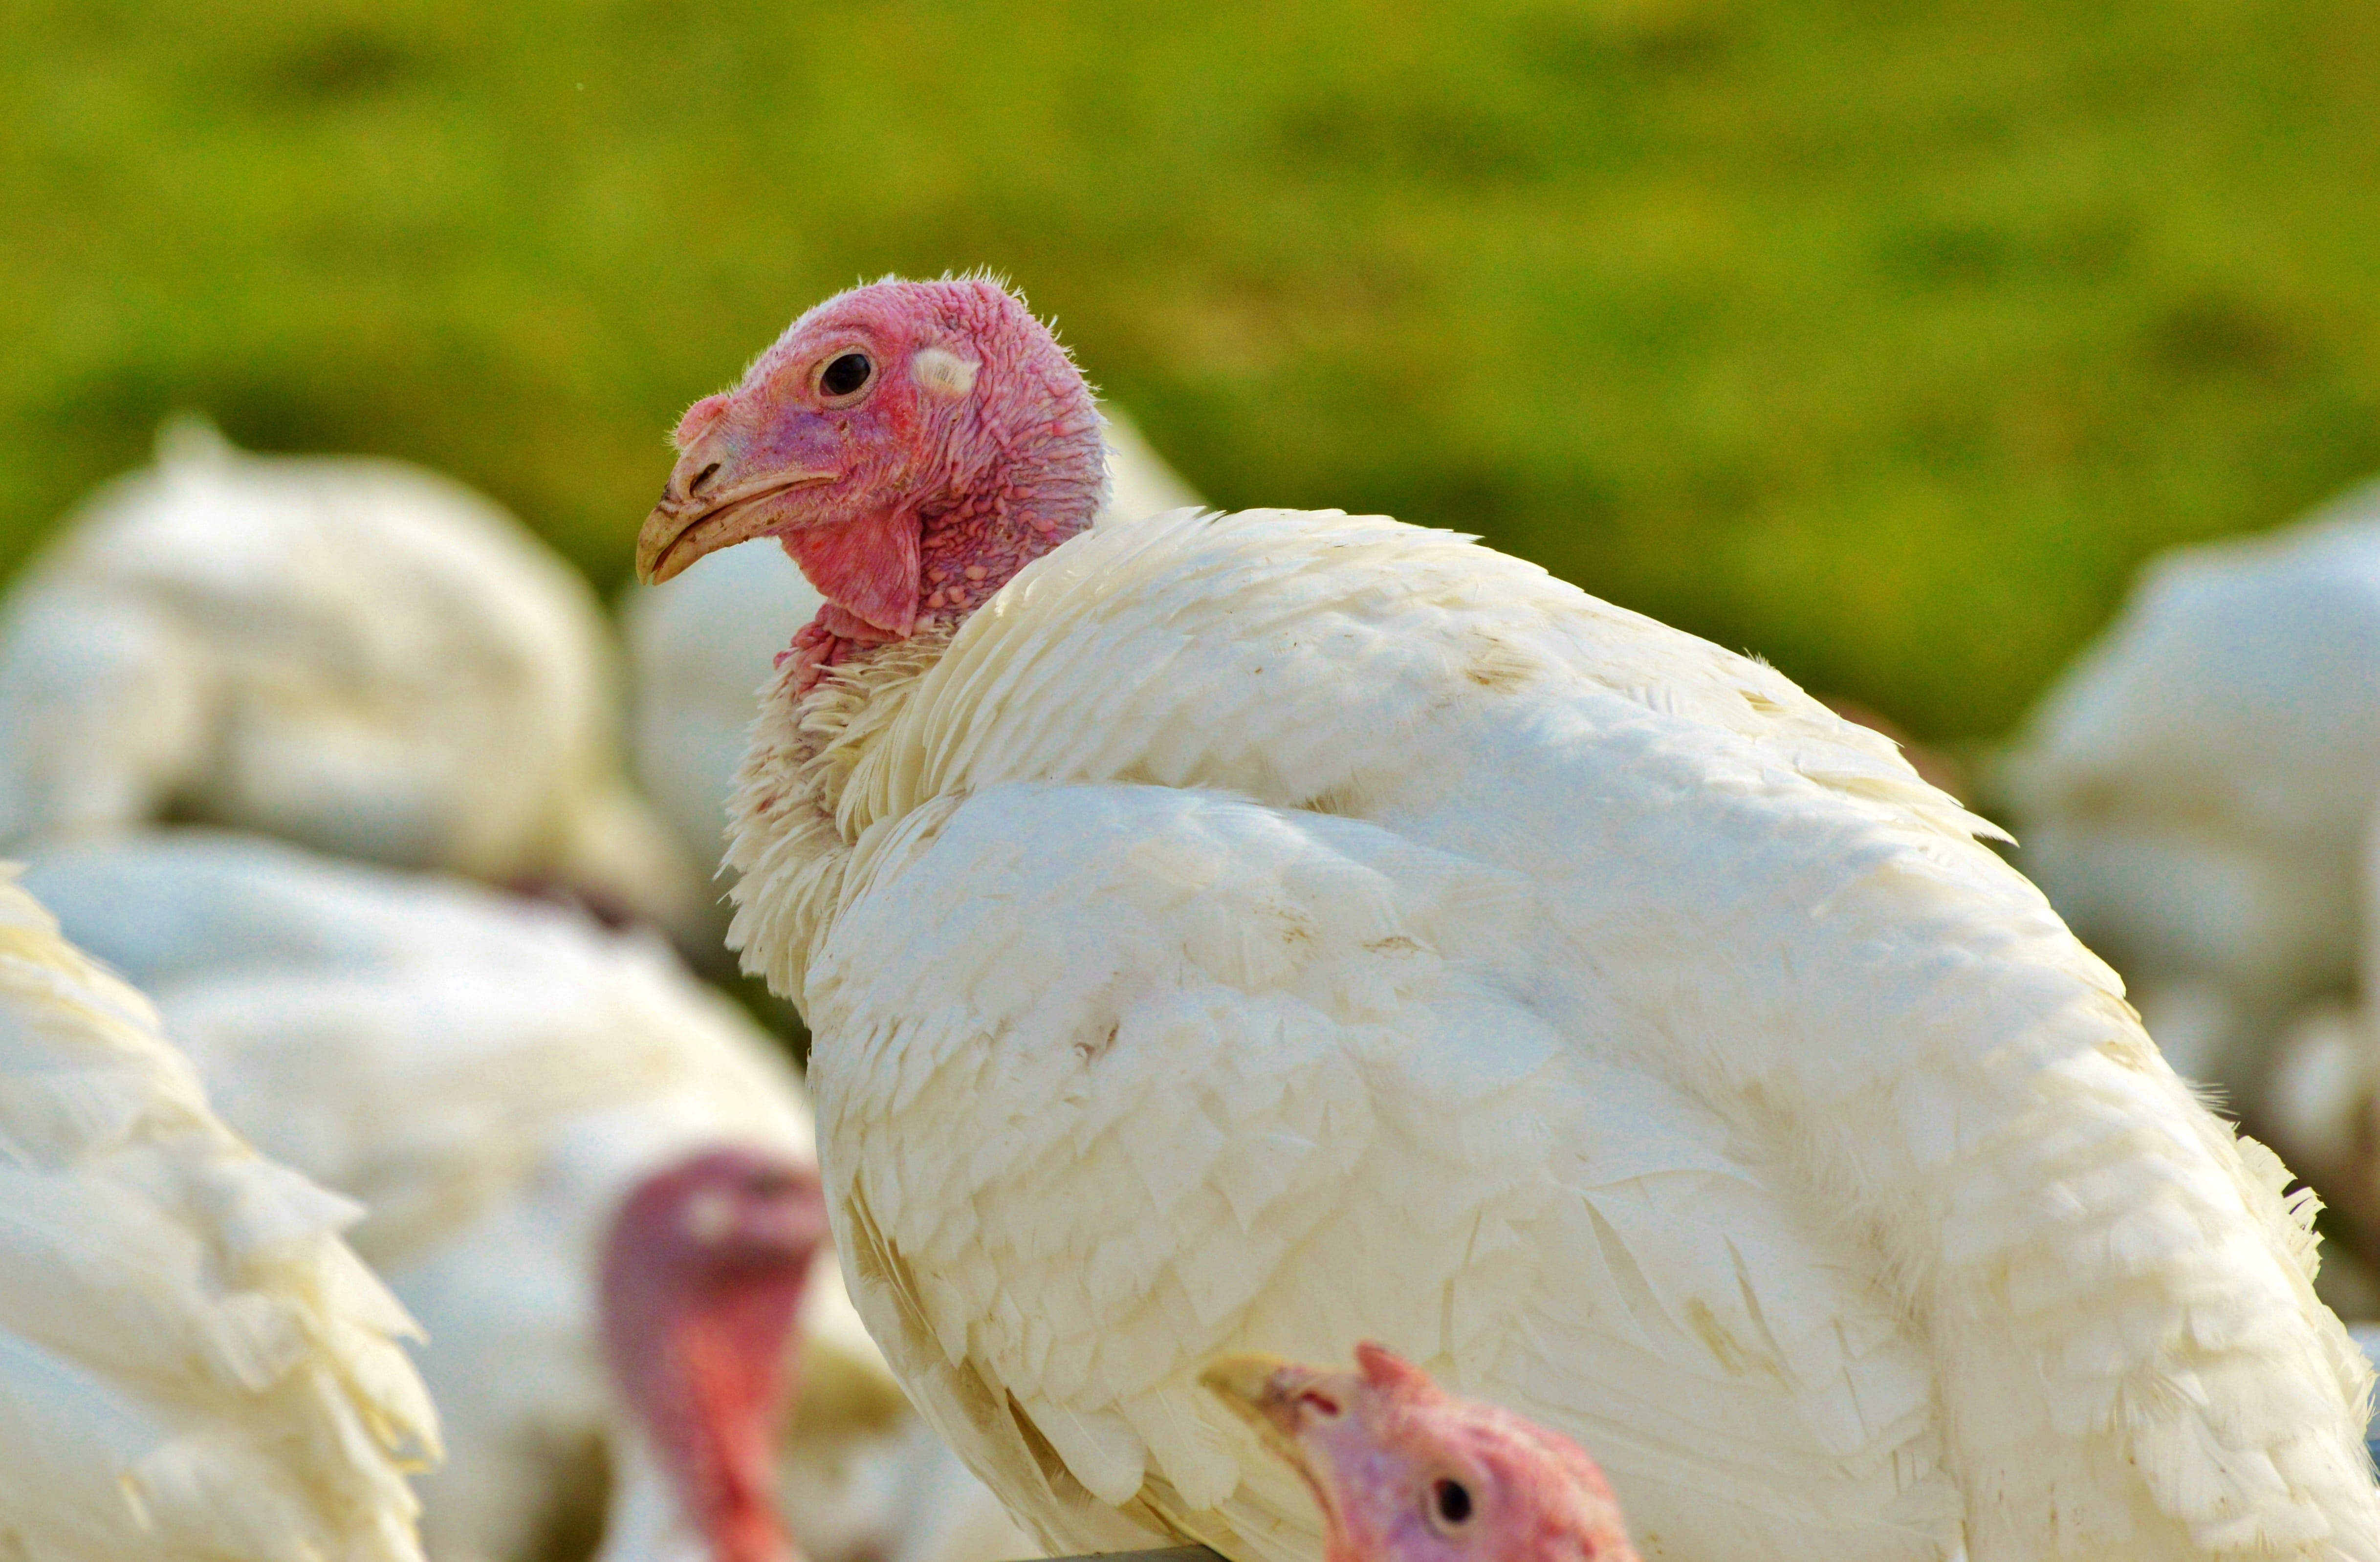 turkeys, birds, plumage, poultry, range, poultry farm, bald head